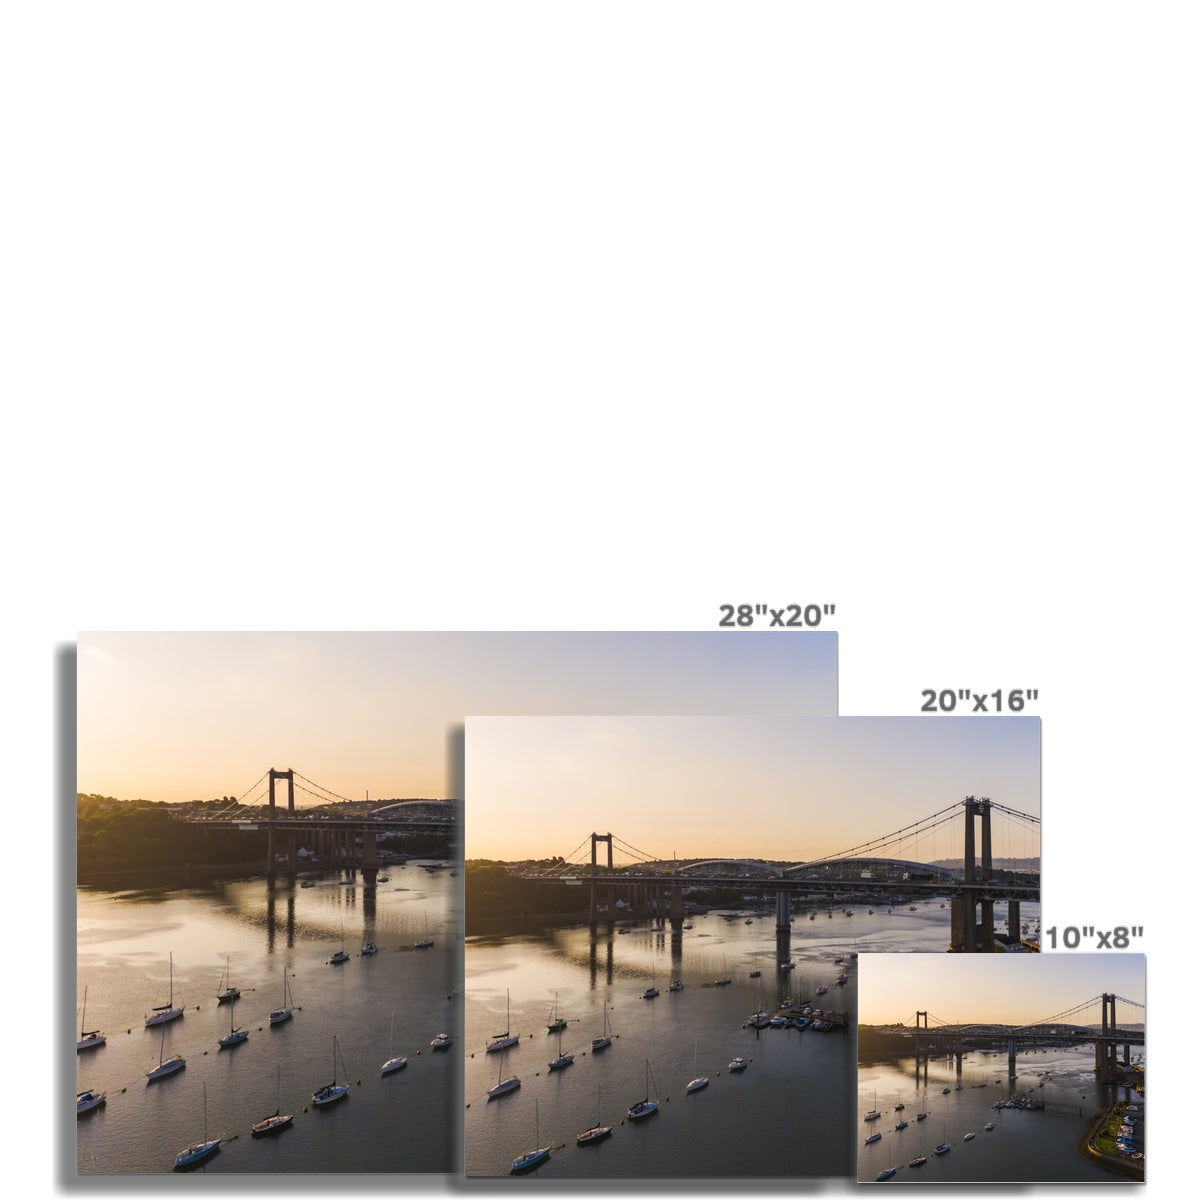 tamar bridge saltash picture sizes